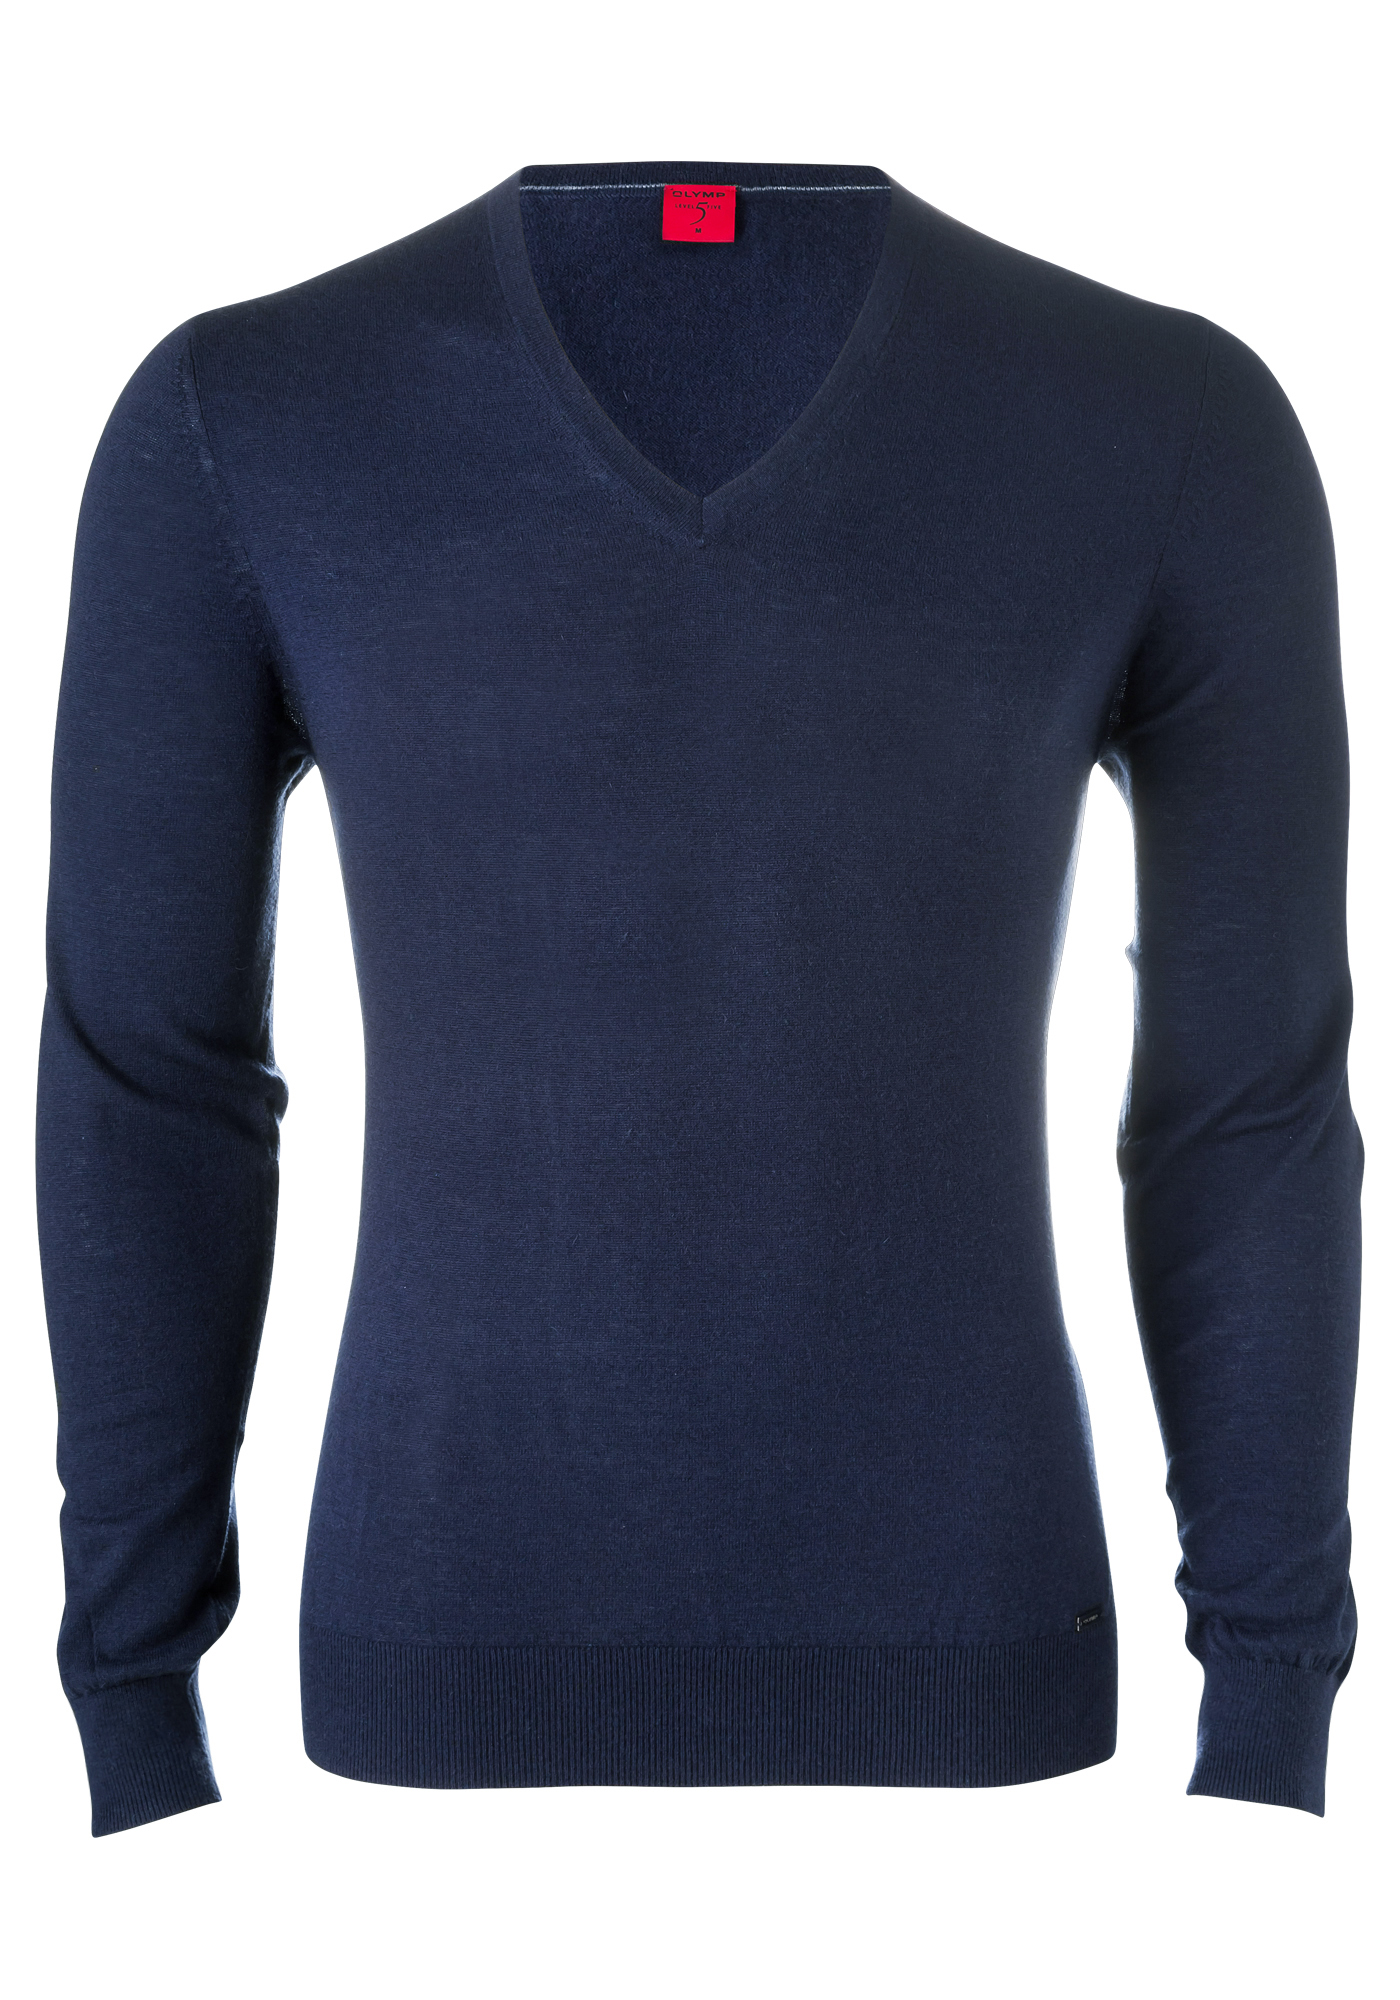 Voorlopige naam meerderheid compact OLYMP Level 5, heren trui wol, blauw (Slim Fit) - Gratis bezorgd